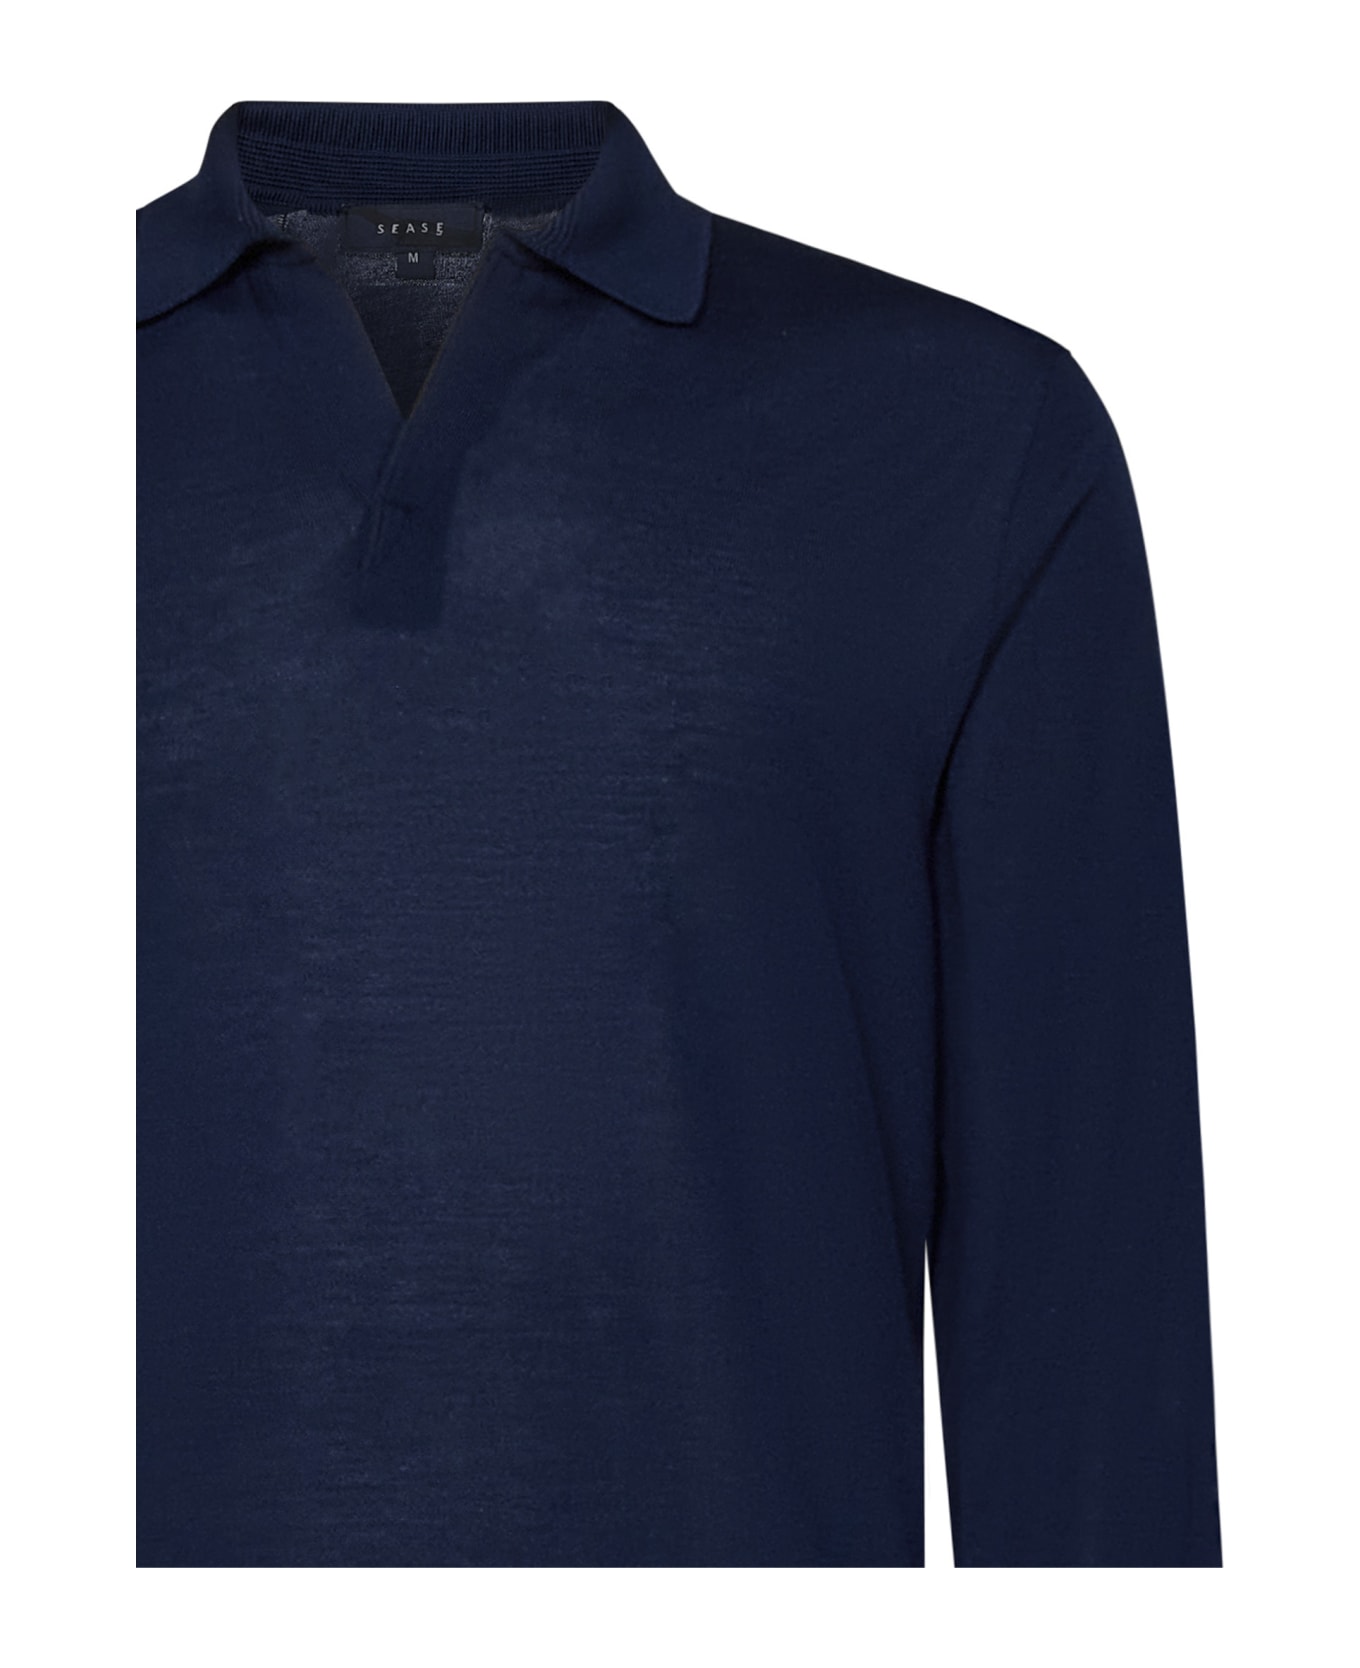 Sease Lasca Polo Shirt - Blue ポロシャツ